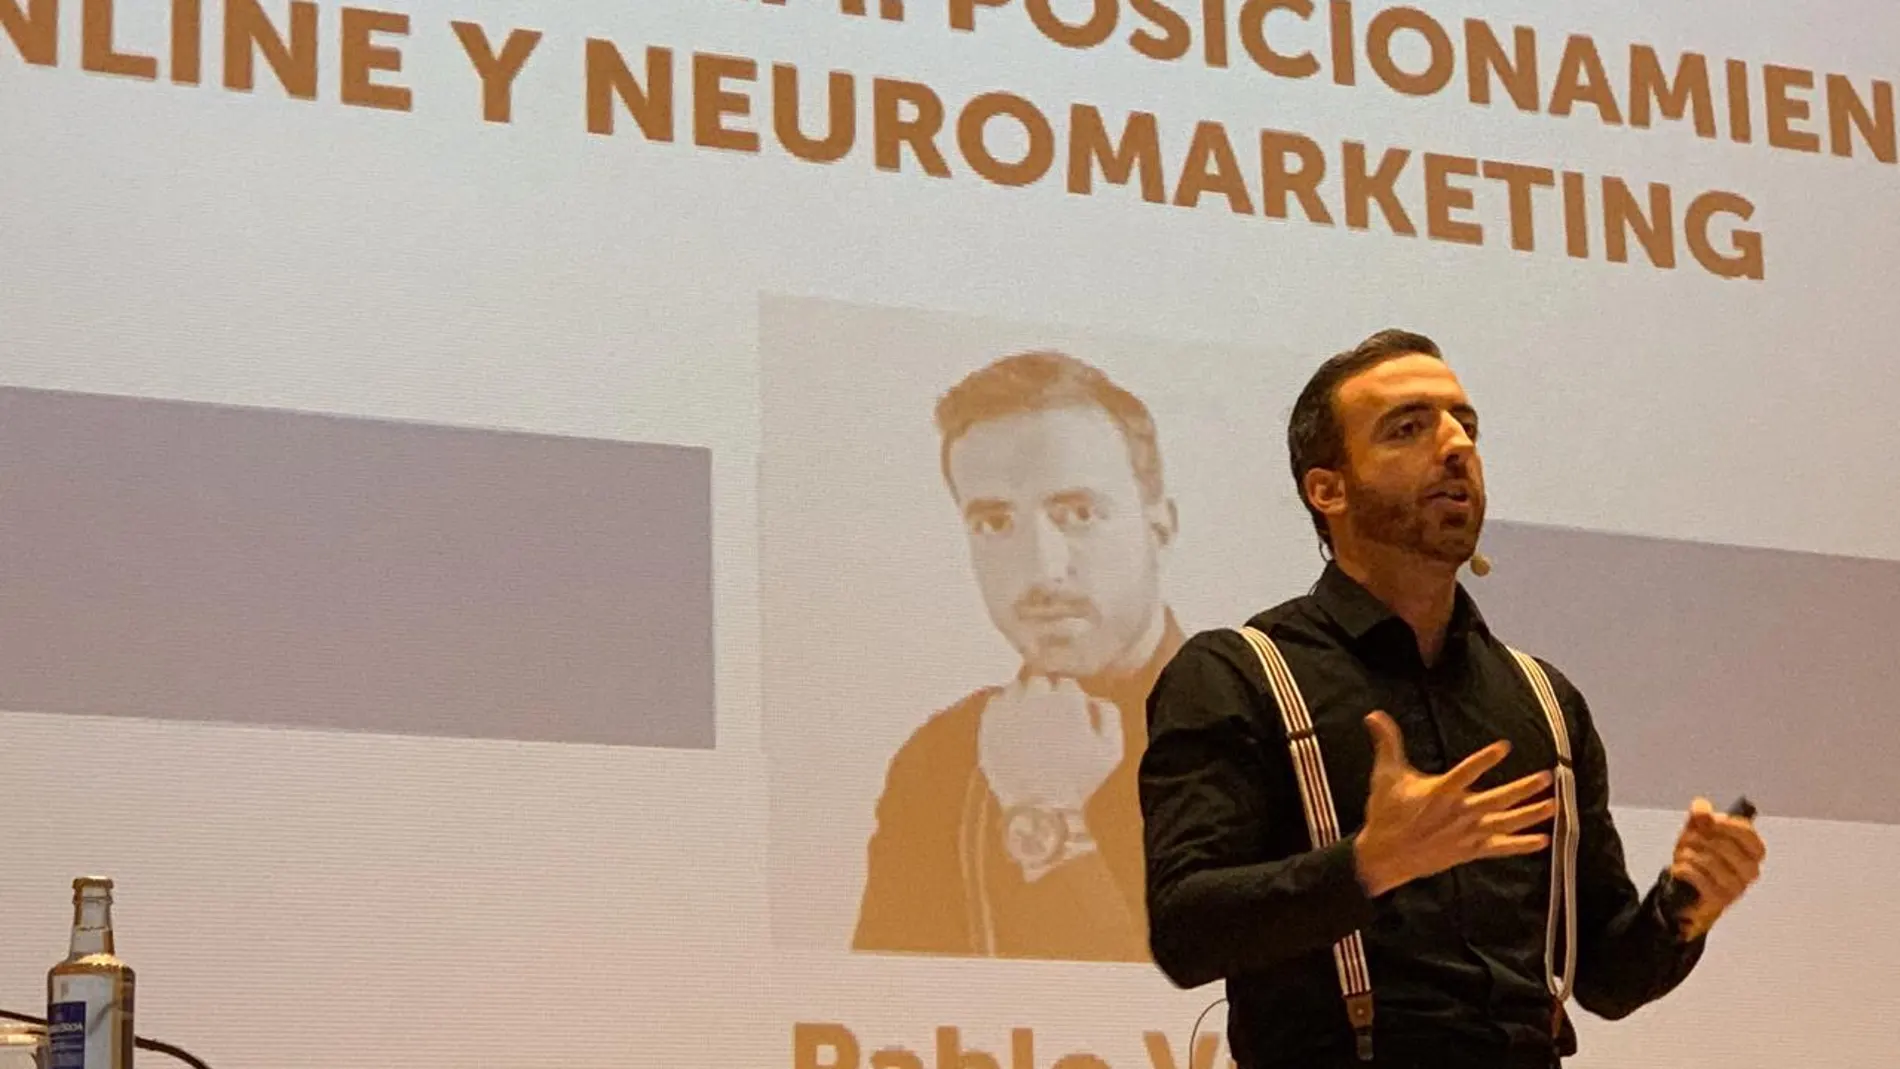 El investigador Pablo Vidal, experto en mercadotecnia digital y neuromárketing, durante la conferencia que pronunció en la Universidad Politécnica de Valencia en Comunica2